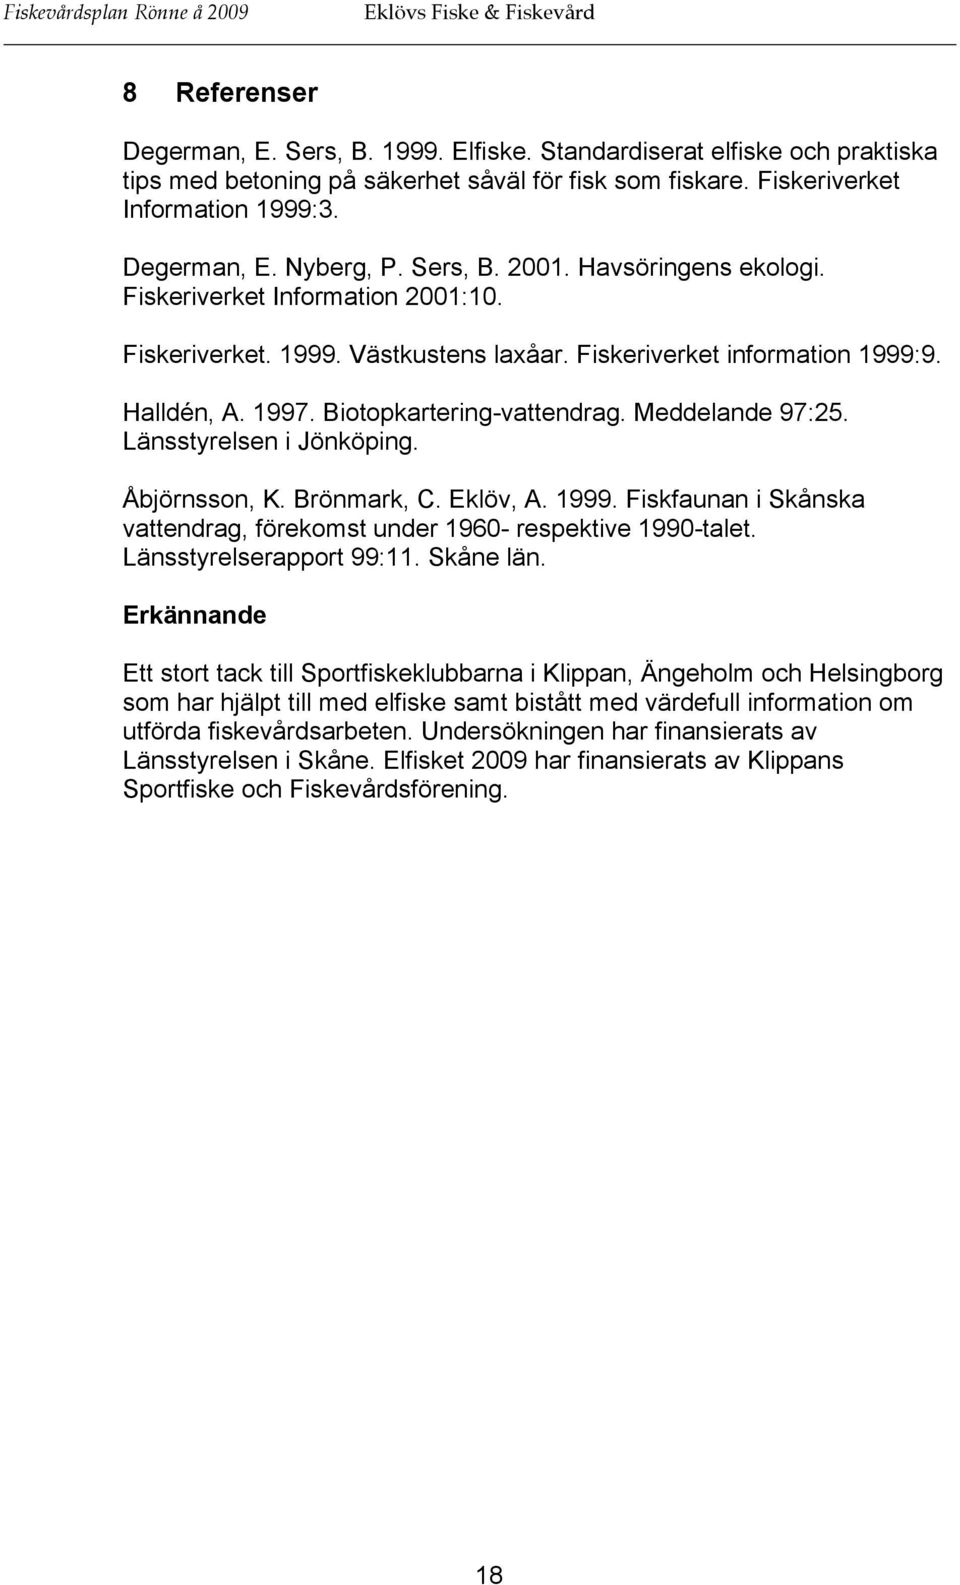 Fiskeriverket information 1999:9. Halldén, A. 1997. Biotopkartering-vattendrag. Meddelande 97:25. Länsstyrelsen i Jönköping. Åbjörnsson, K. Brönmark, C. Eklöv, A. 1999. Fiskfaunan i Skånska vattendrag, förekomst under 1960- respektive 1990-talet.